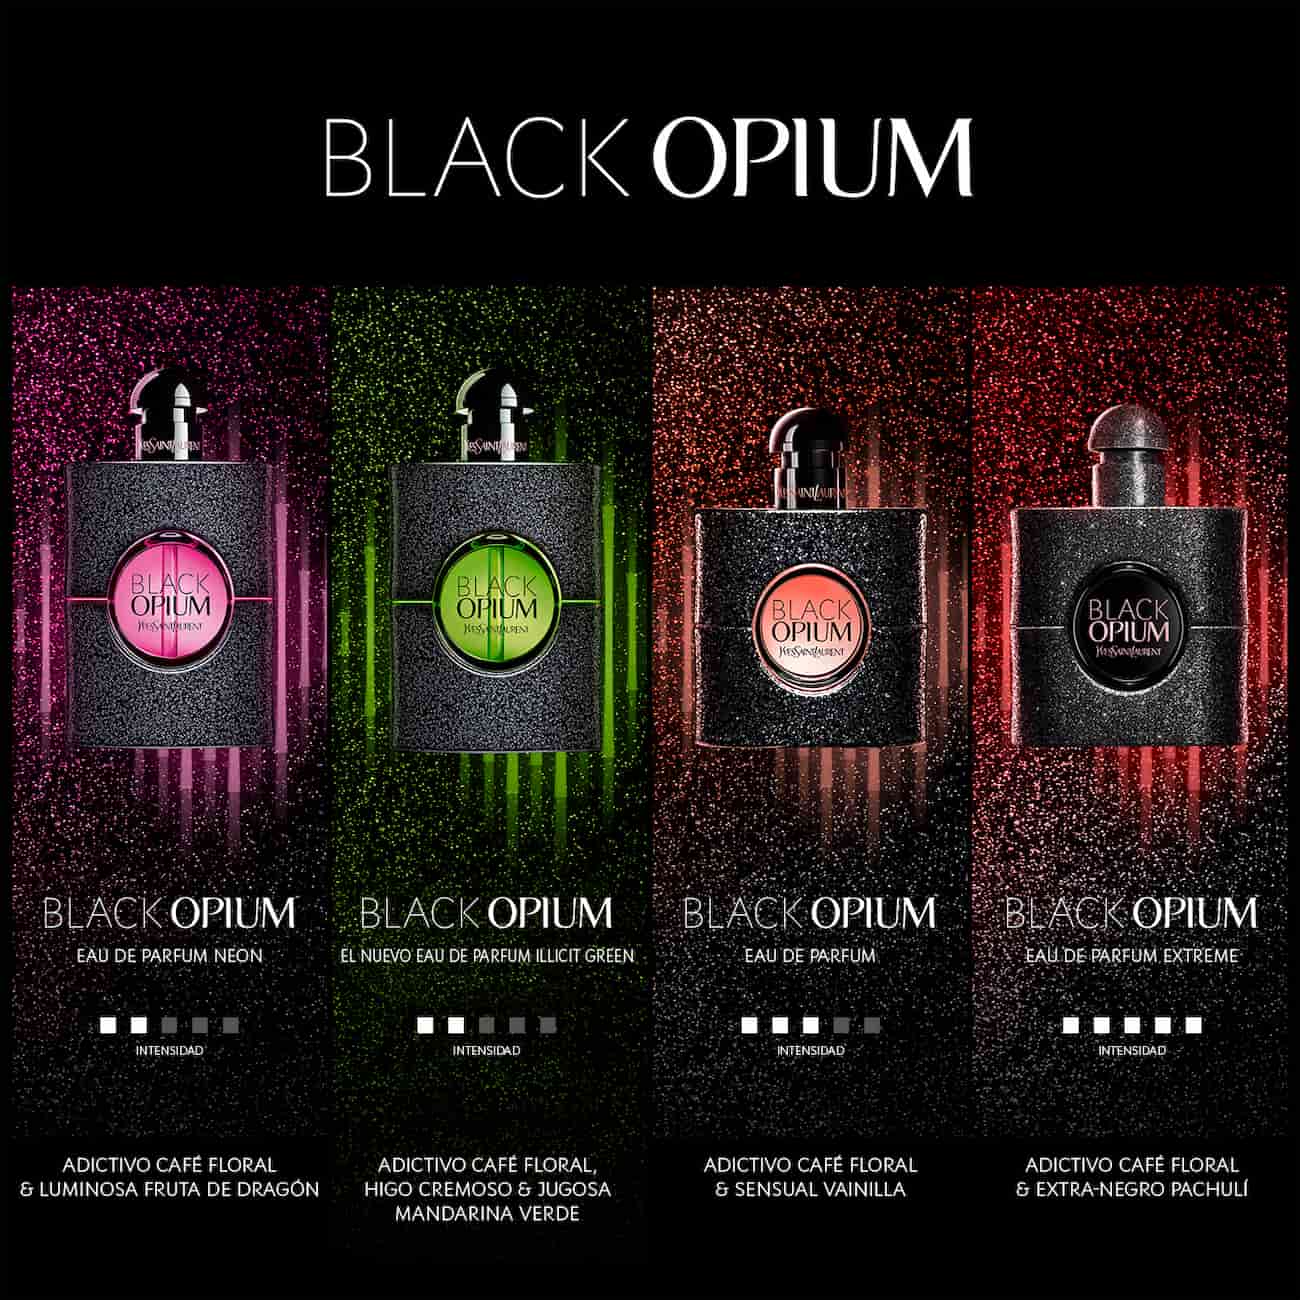 Black Opium in its 4 versions